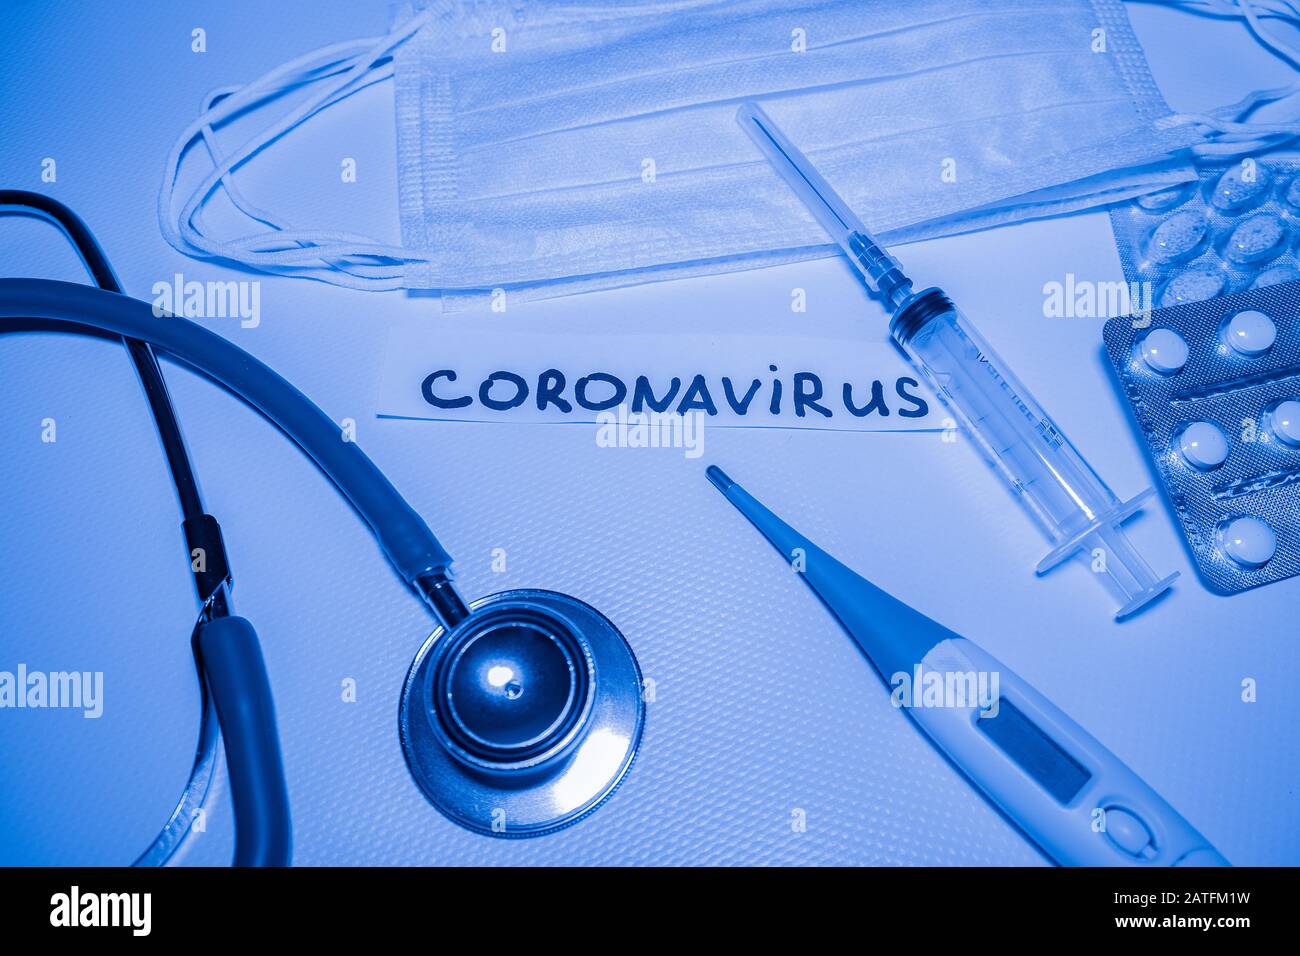 Medical blue background with inscription coronavirus, stethoscope, pills, thermometer, syringe Stock Photo